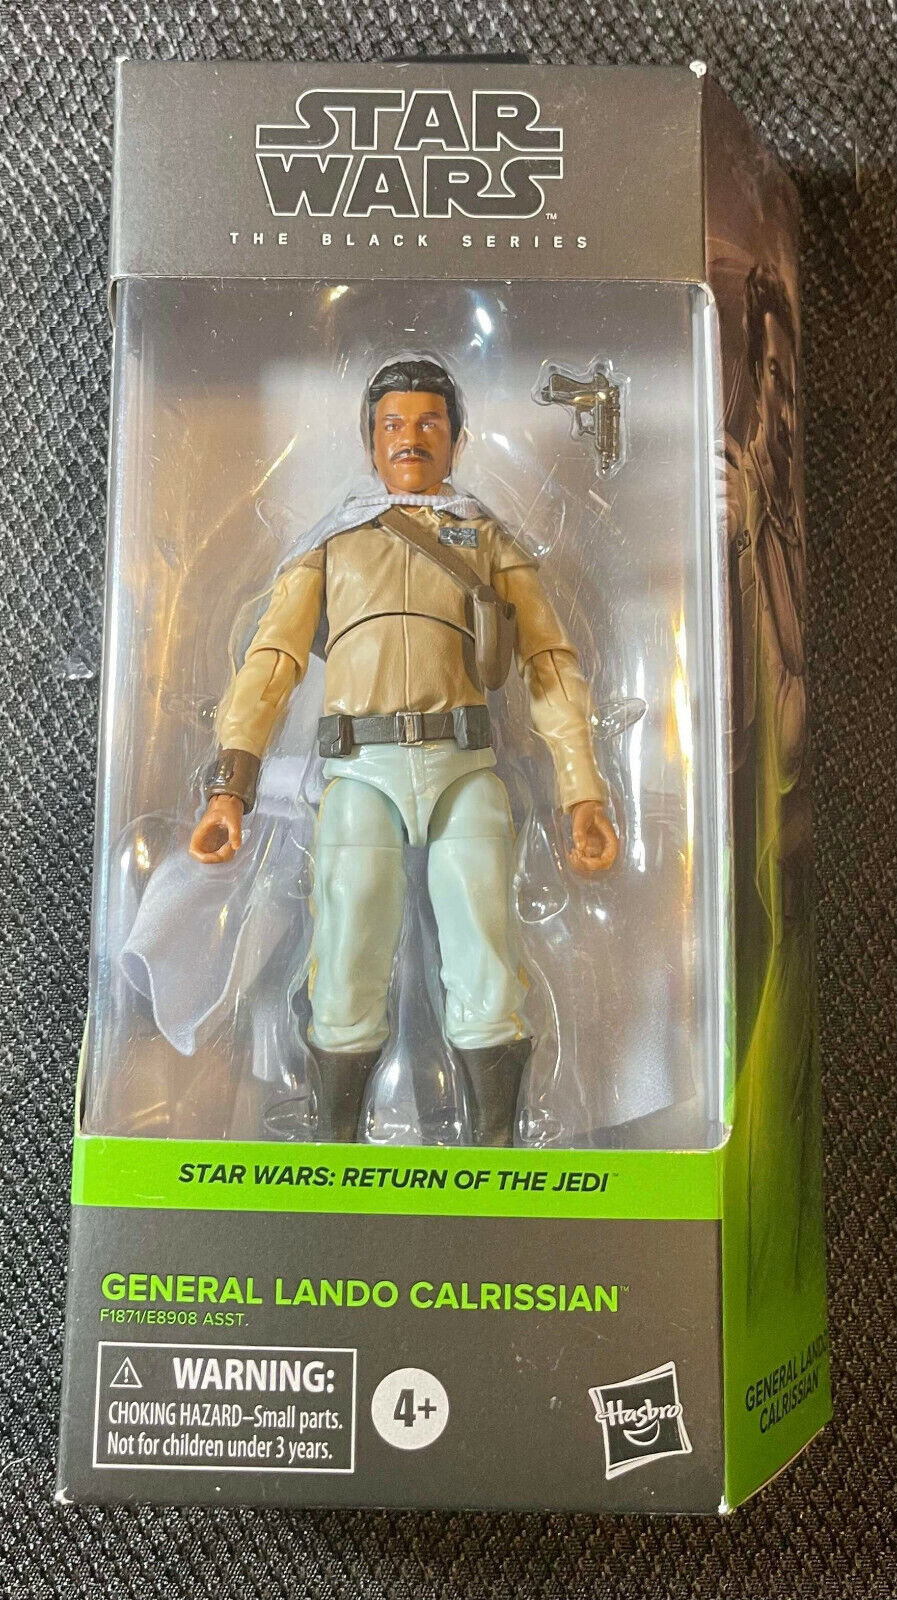 Hasbro Star Wars Black Series 6" General Lando Calrissian Action Figure